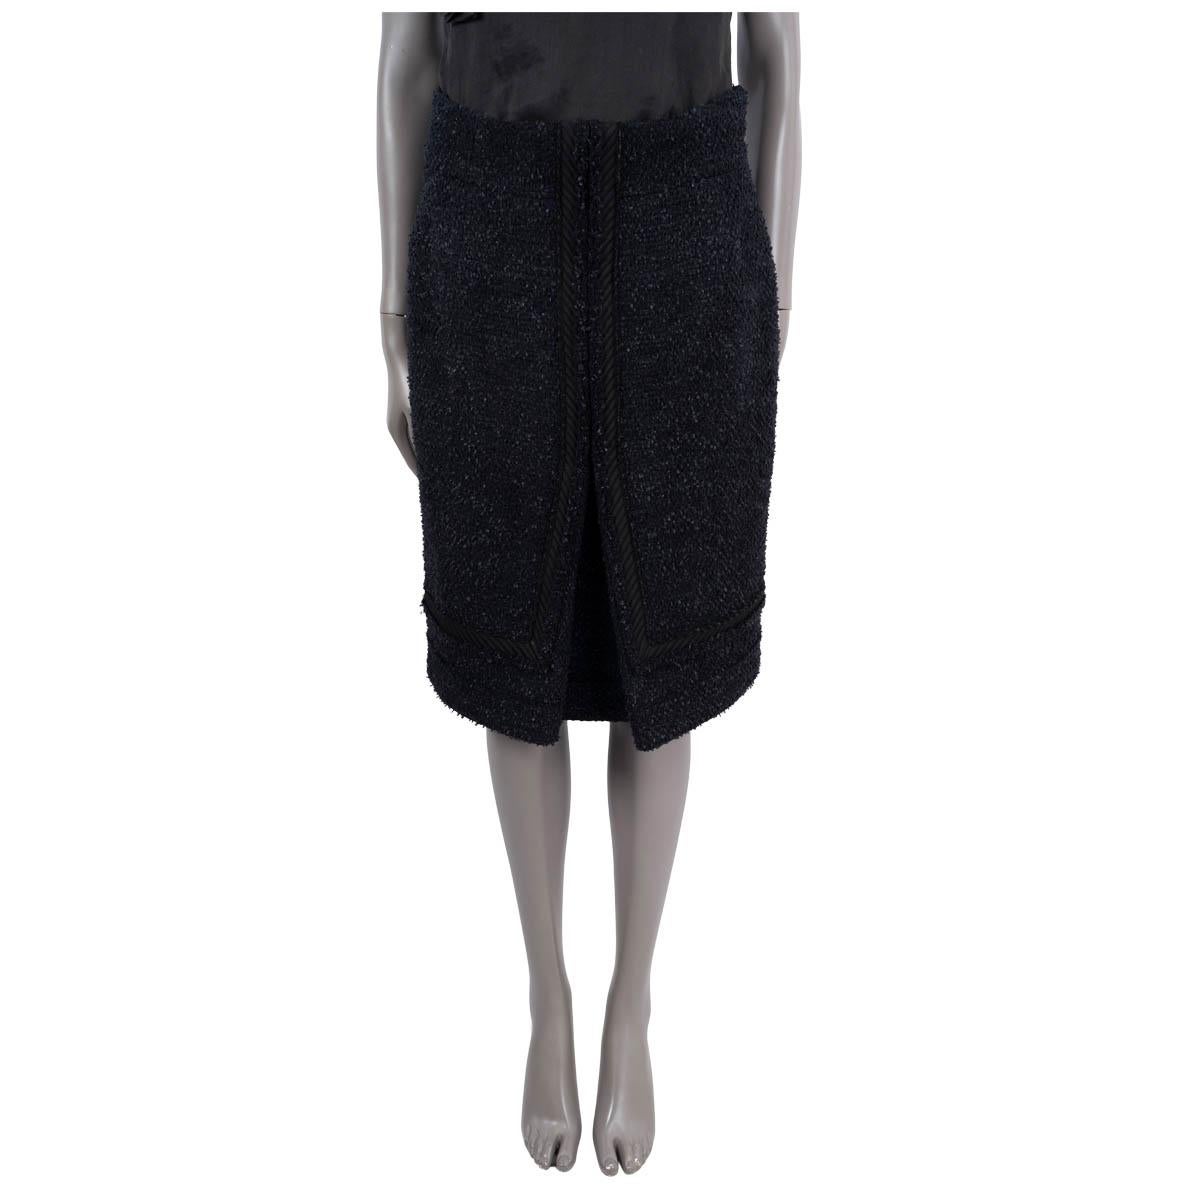 100% authentique  Jupe en tweed de Chanel, en laine (80%) et nylon (20%) noir et bleu marine. Il est doté d'une bordure matelassée et d'un bouton logo à la taille. Il se ferme par une fermeture à glissière dissimulée dans le dos et est doublé de